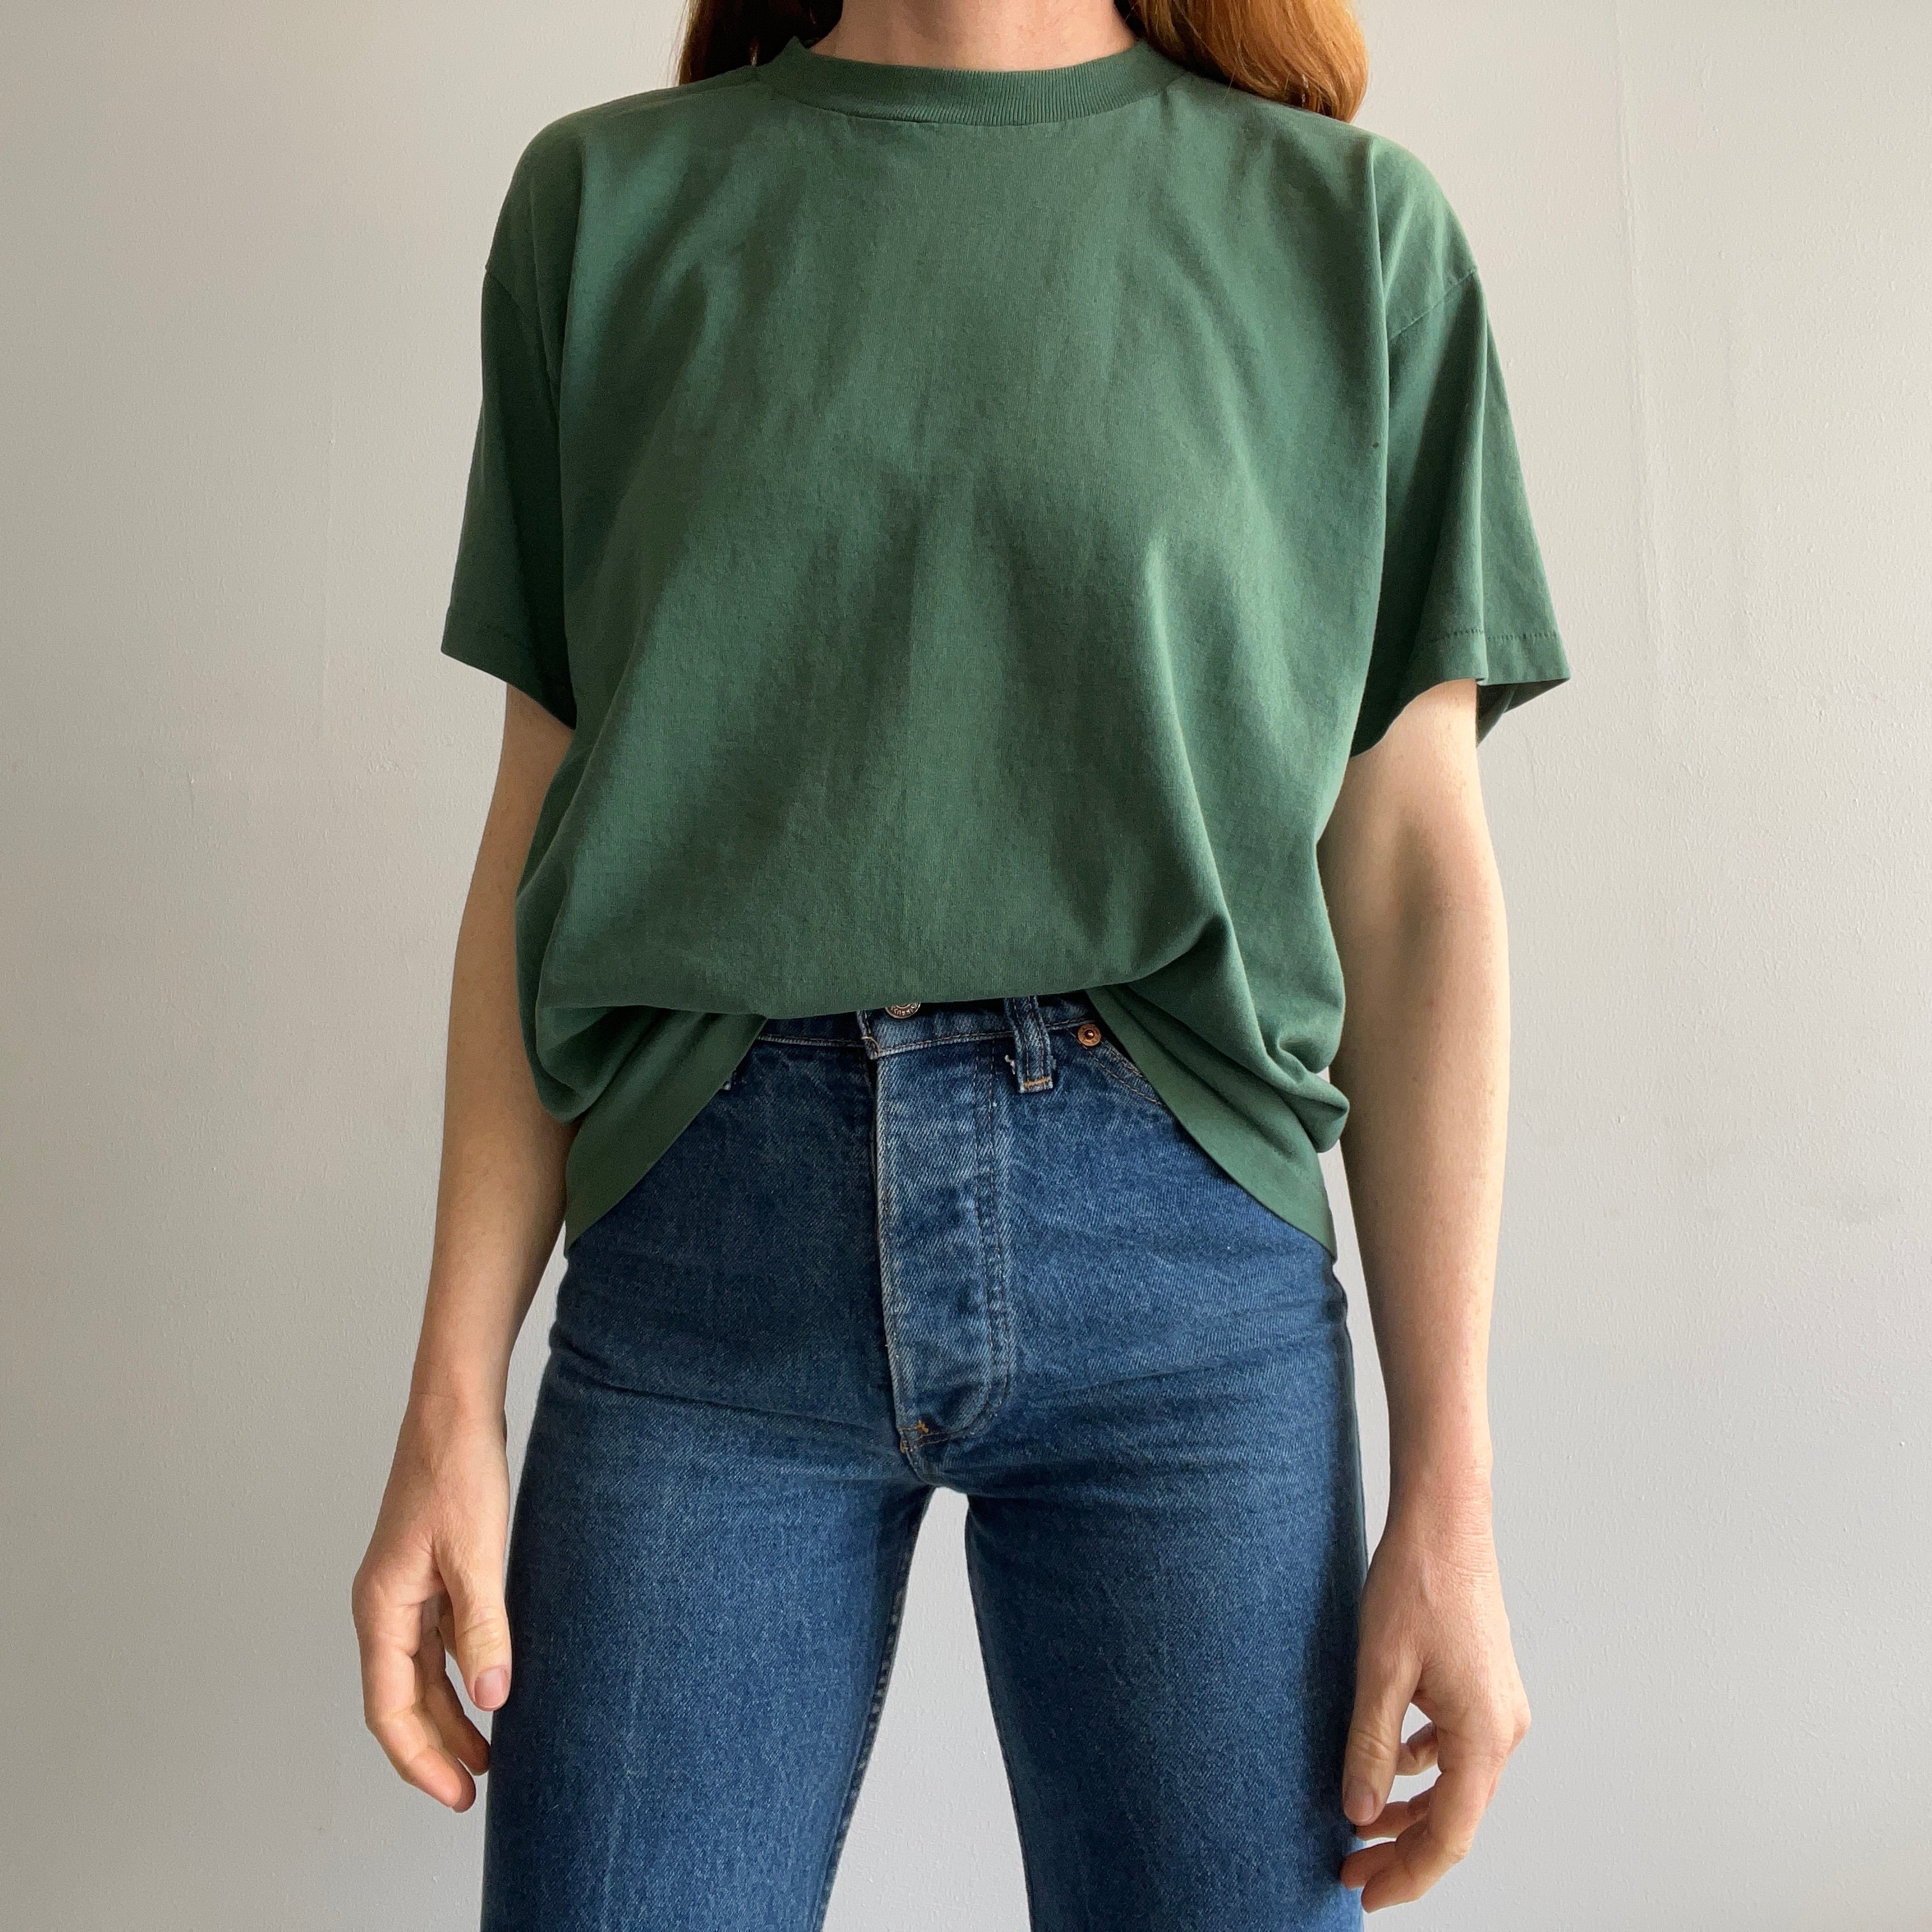 T-shirt en coton vert foncé vierge des années 1980